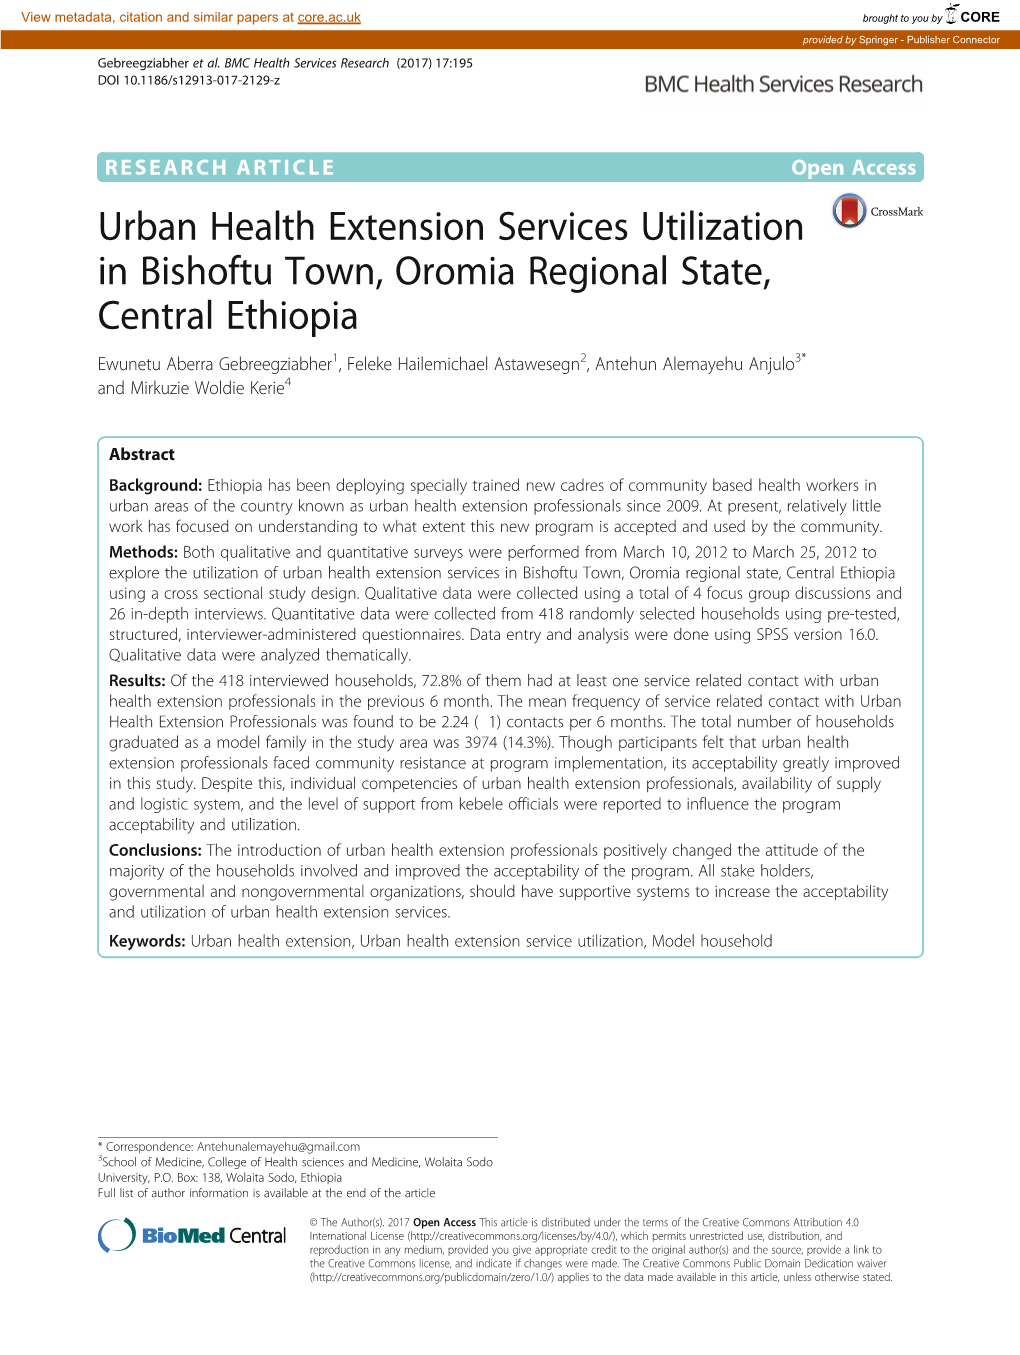 Urban Health Extension Services Utilization in Bishoftu Town, Oromia Regional State, Central Ethiopia